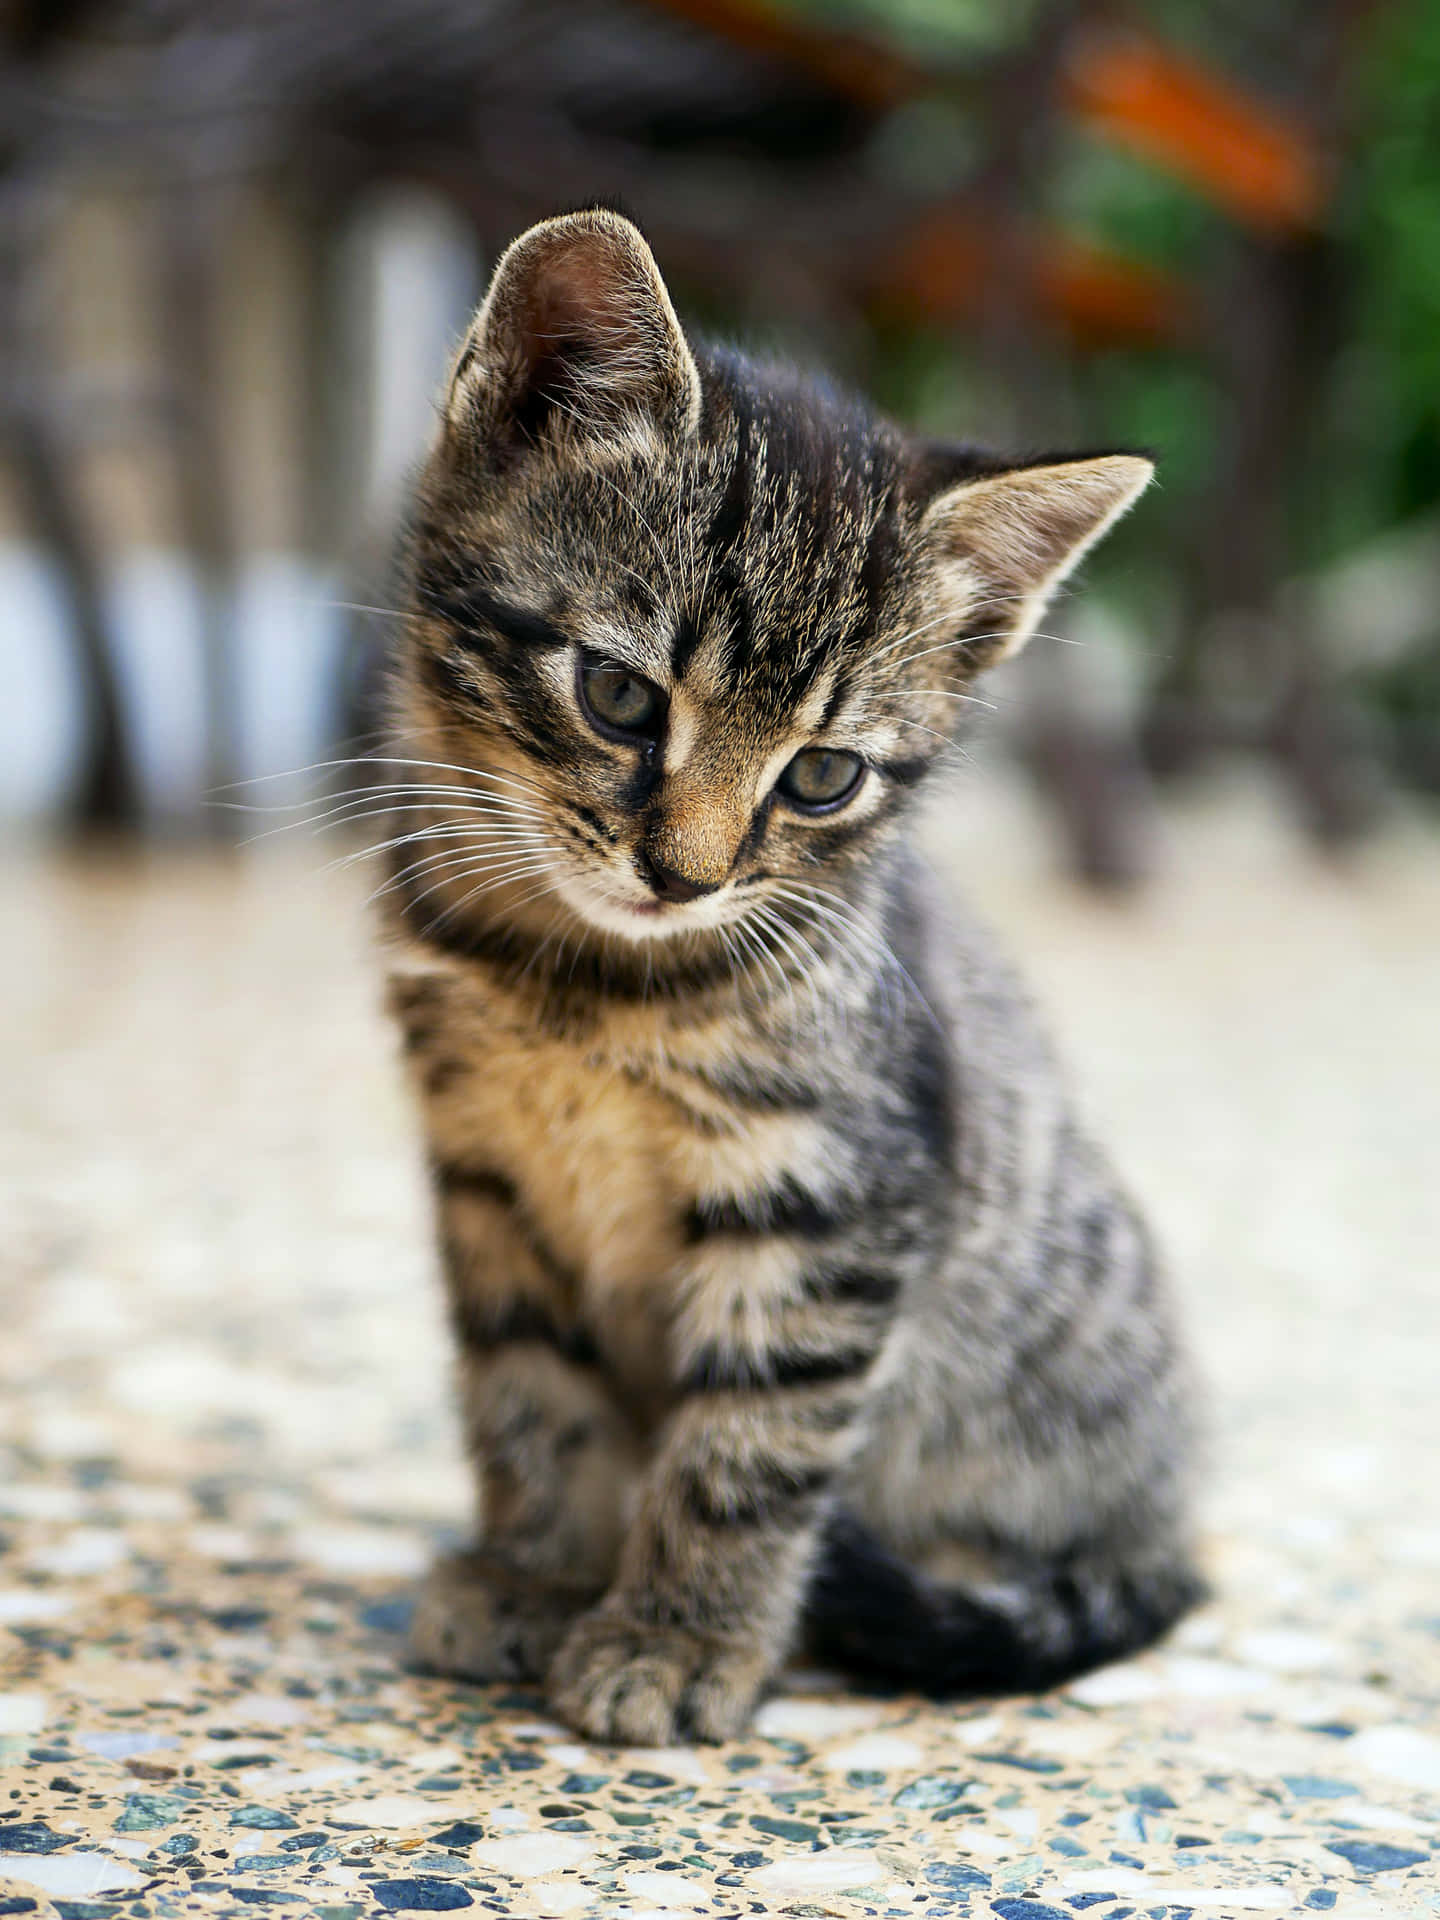 A Small Kitten Sitting On A Tile Floor